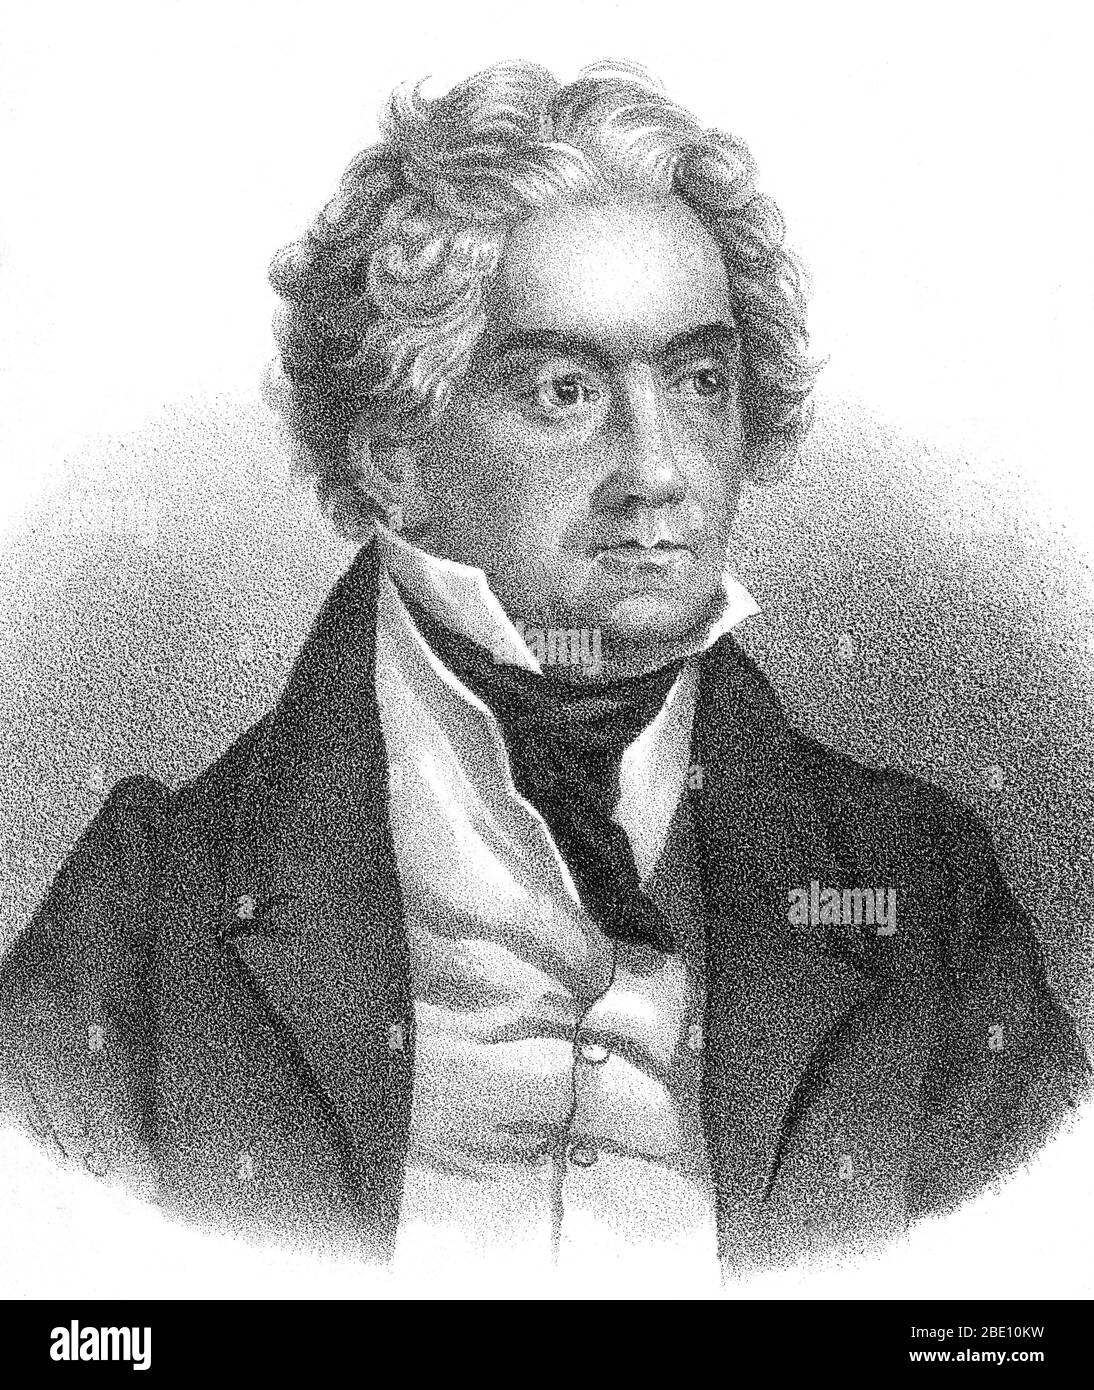 Ludwig van Beethoven (getauft am 17. Dezember 1770 - 26. März 1827) war ein deutscher Komponist und Pianist. Als entscheidende Figur im Übergang zwischen der klassischen und der romantischen Epoche der westlichen Kunstmusik ist er einer der berühmtesten und einflussreichsten Komponisten. Beethoven wurde in Bonn geboren, zog aber Anfang der 20er Jahre nach Wien, studierte bei Joseph Haydn und erarbeitete sich schnell einen Ruf als virtuoser Pianist. Seine Hörfähigkeit begann in seinen späten Zwanzigern zu verschlechtern, doch er fuhr fort zu komponieren, zu führen und zu spielen, auch nachdem er völlig taub geworden war. In etwa 1800 begann seine Anhörung zu abschrecken Stockfoto